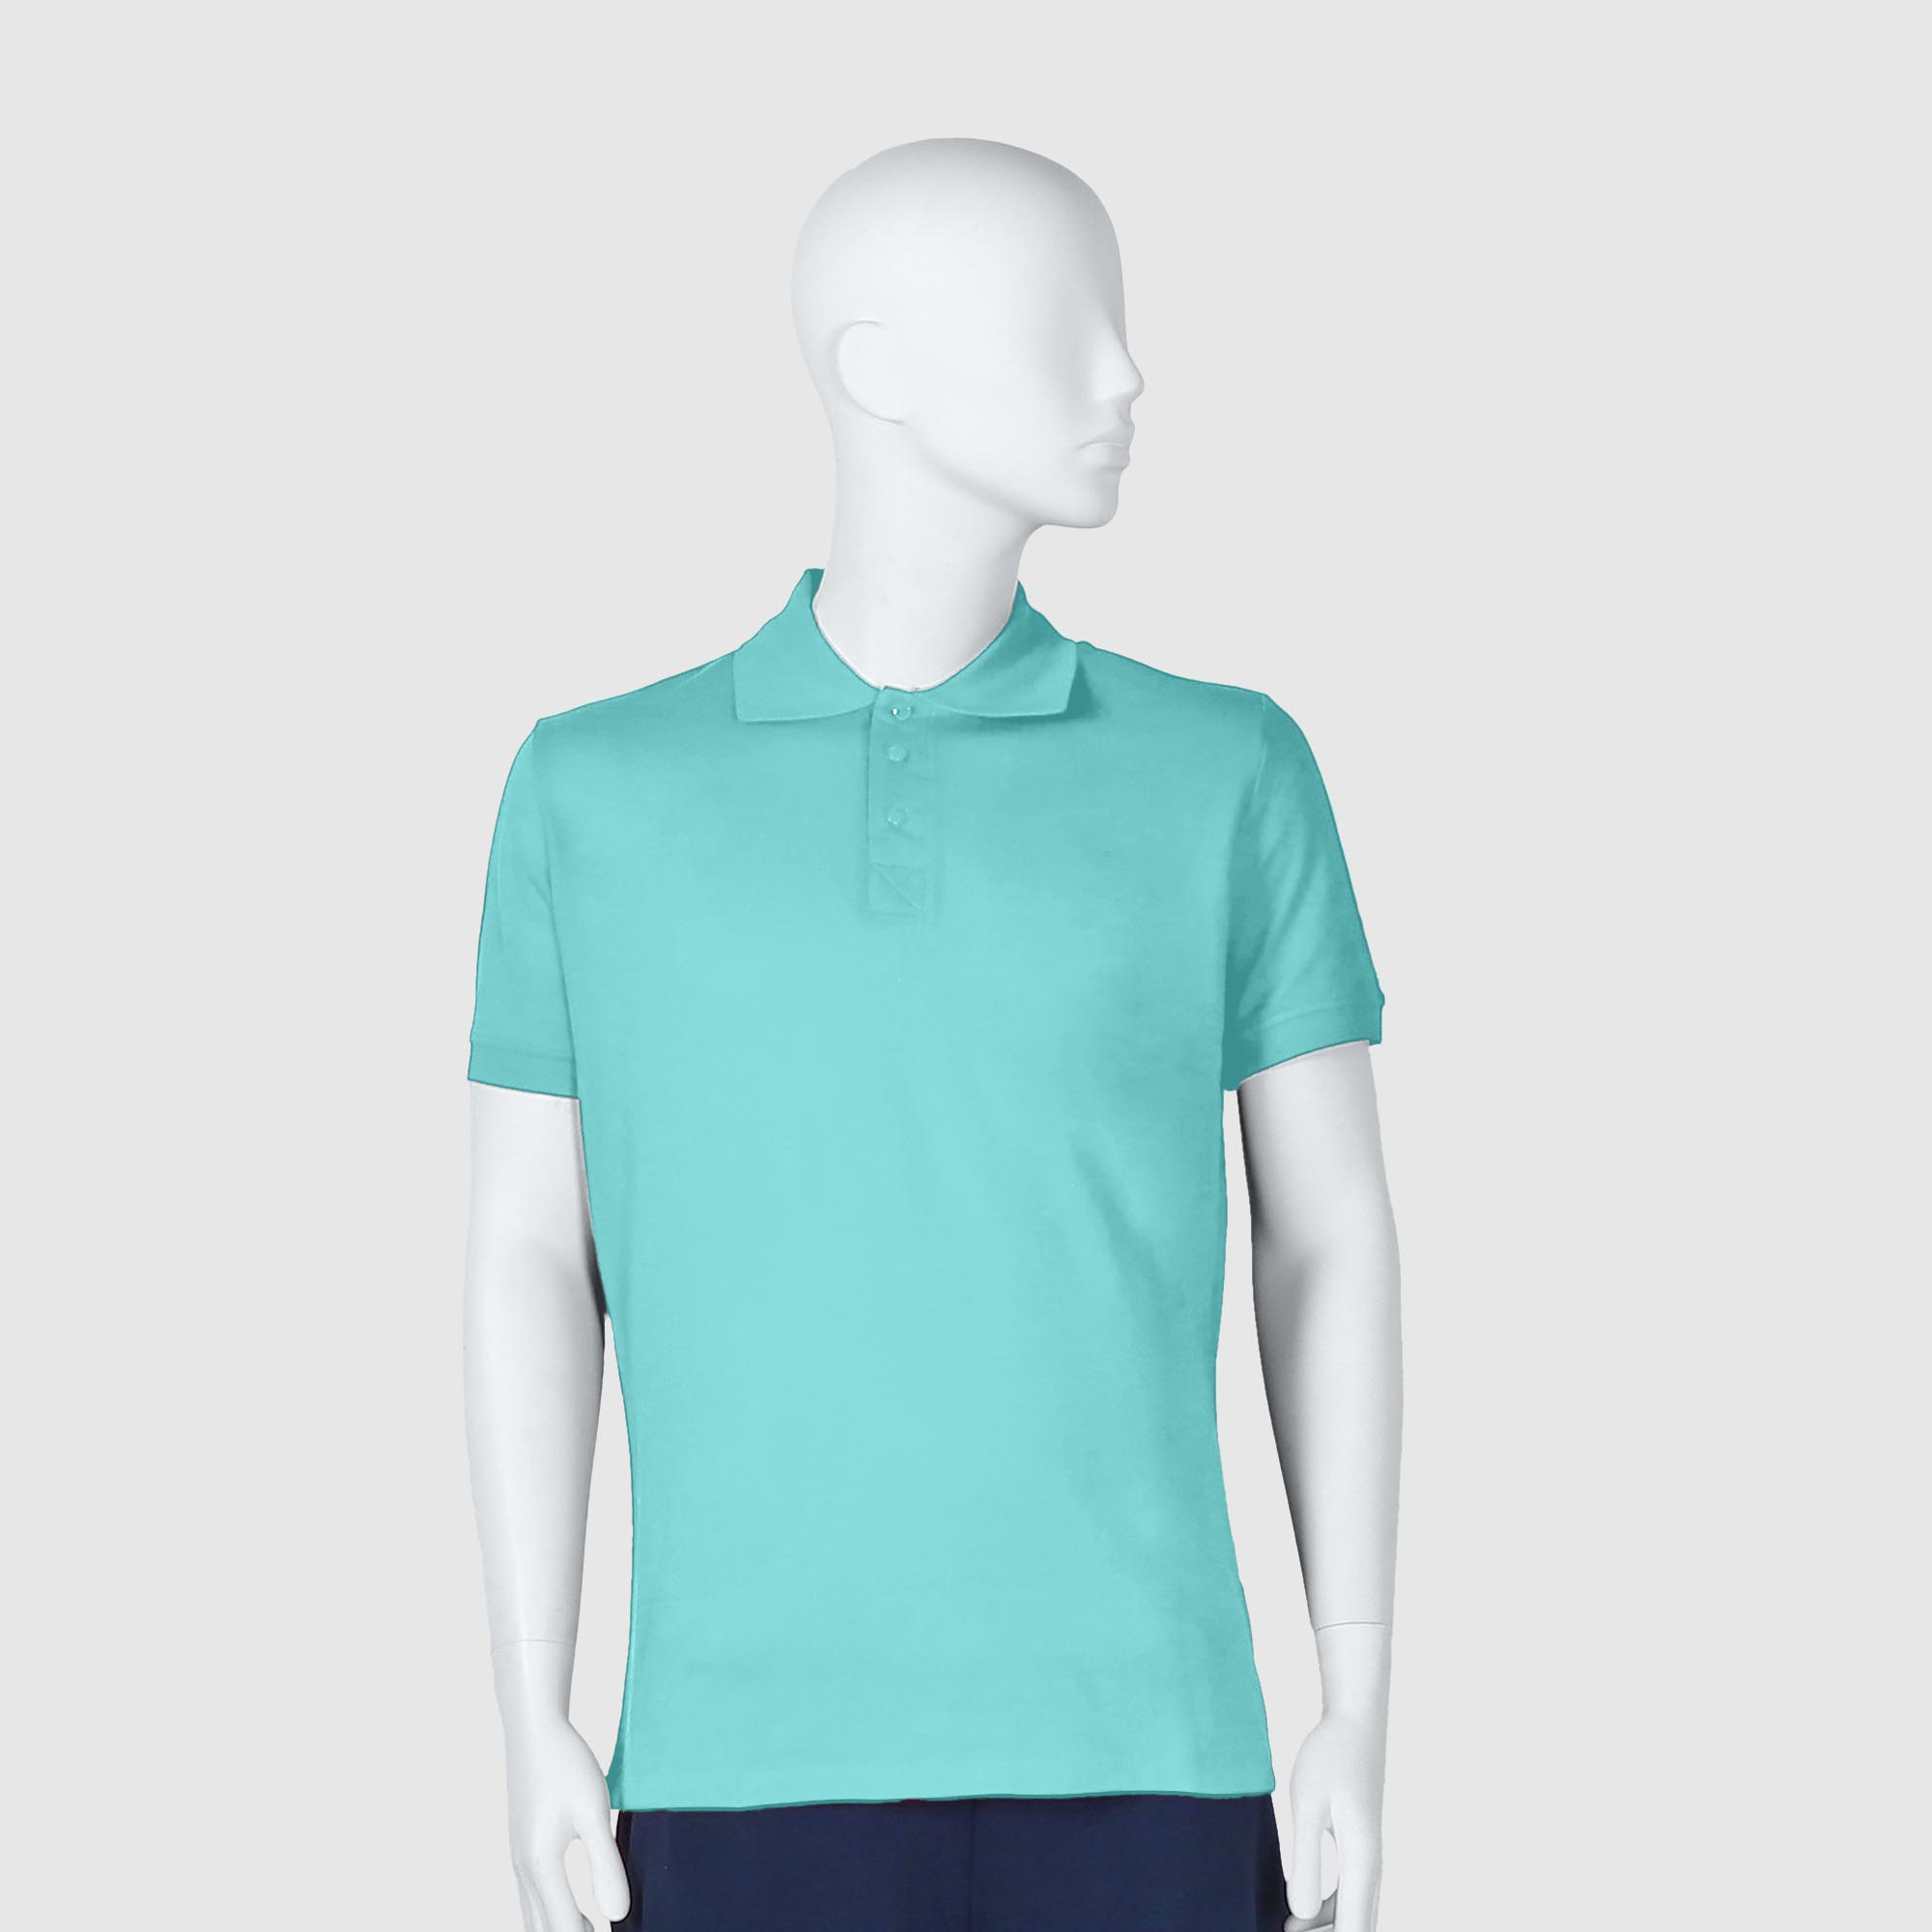 Мужская футболка-поло Diva Teks лазурная (DTD-12), цвет лазурный, размер 44-46